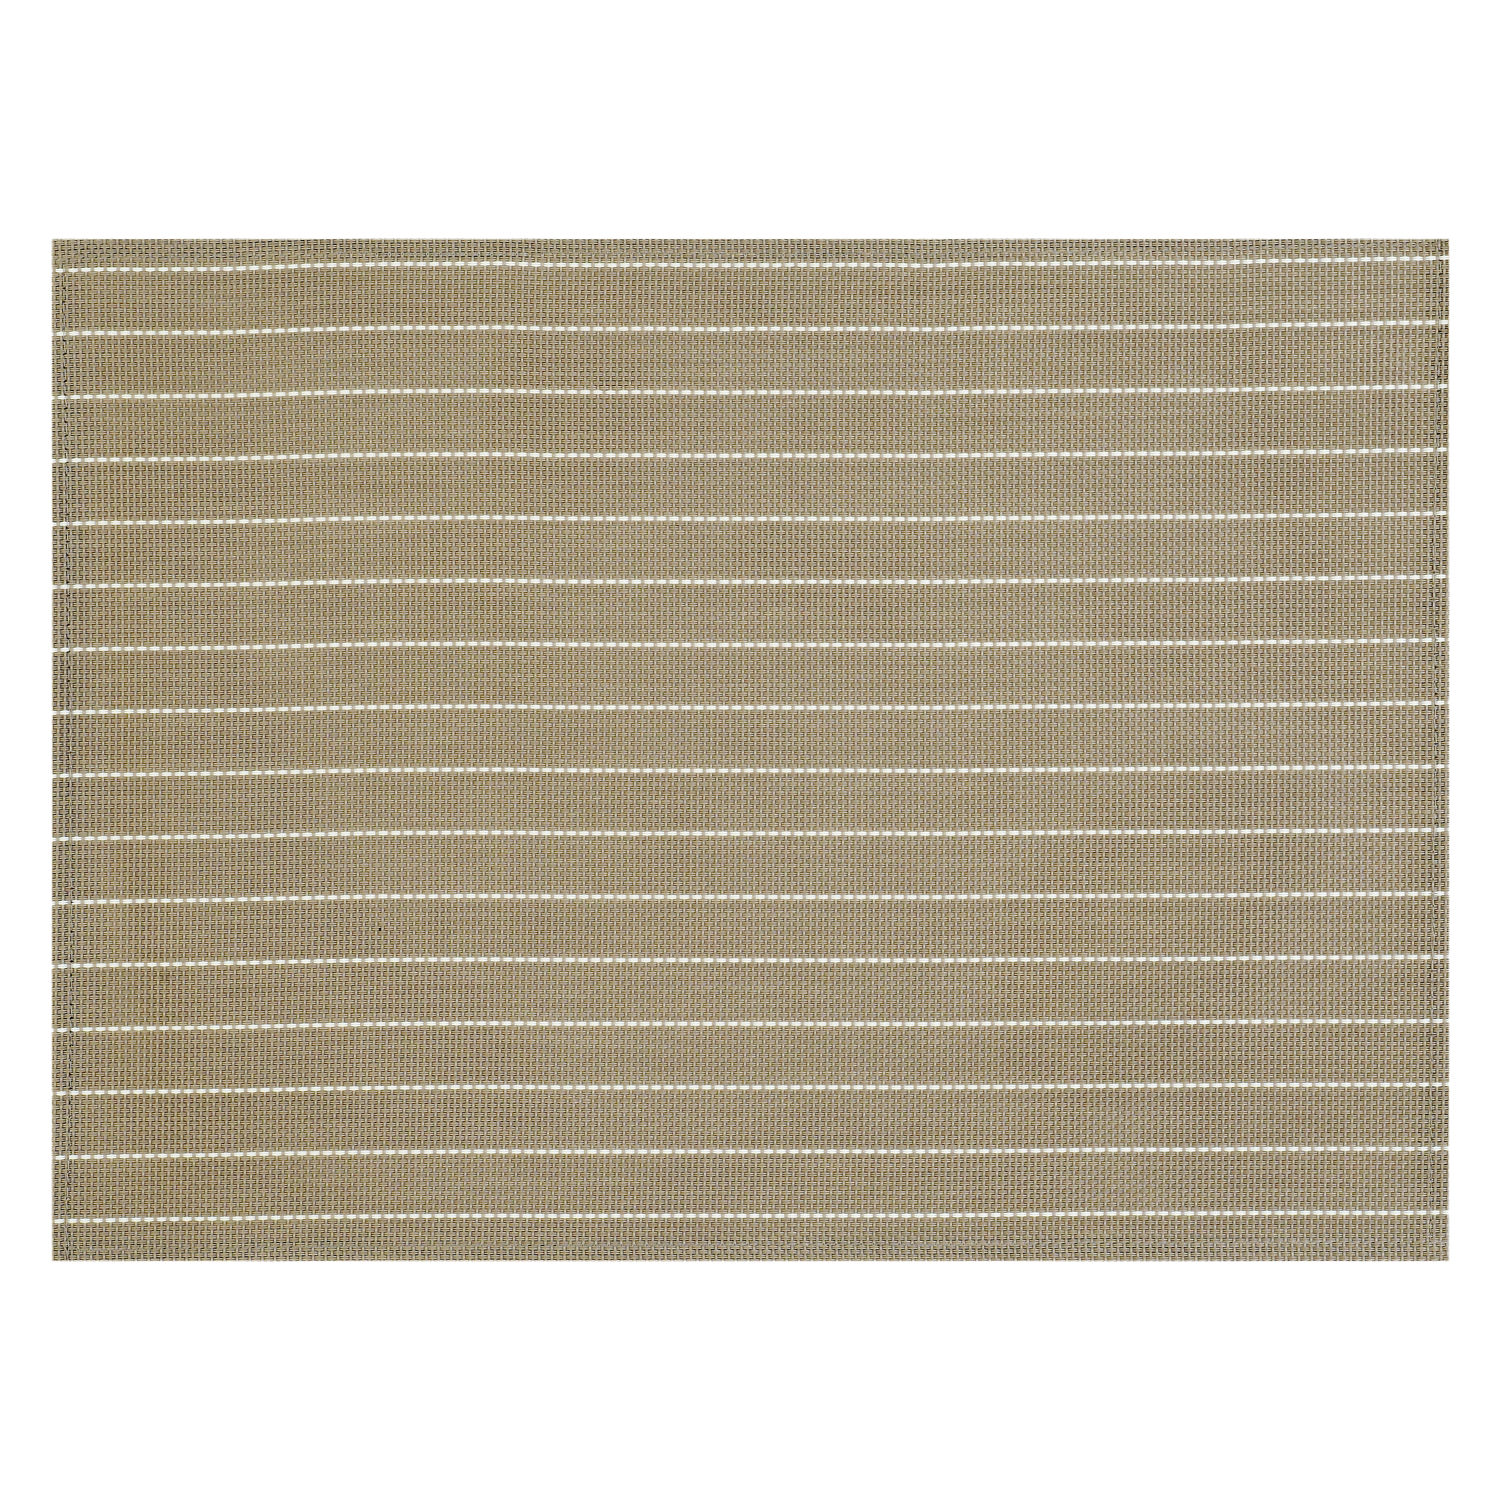 Tischset Stripes - Farbe taupe